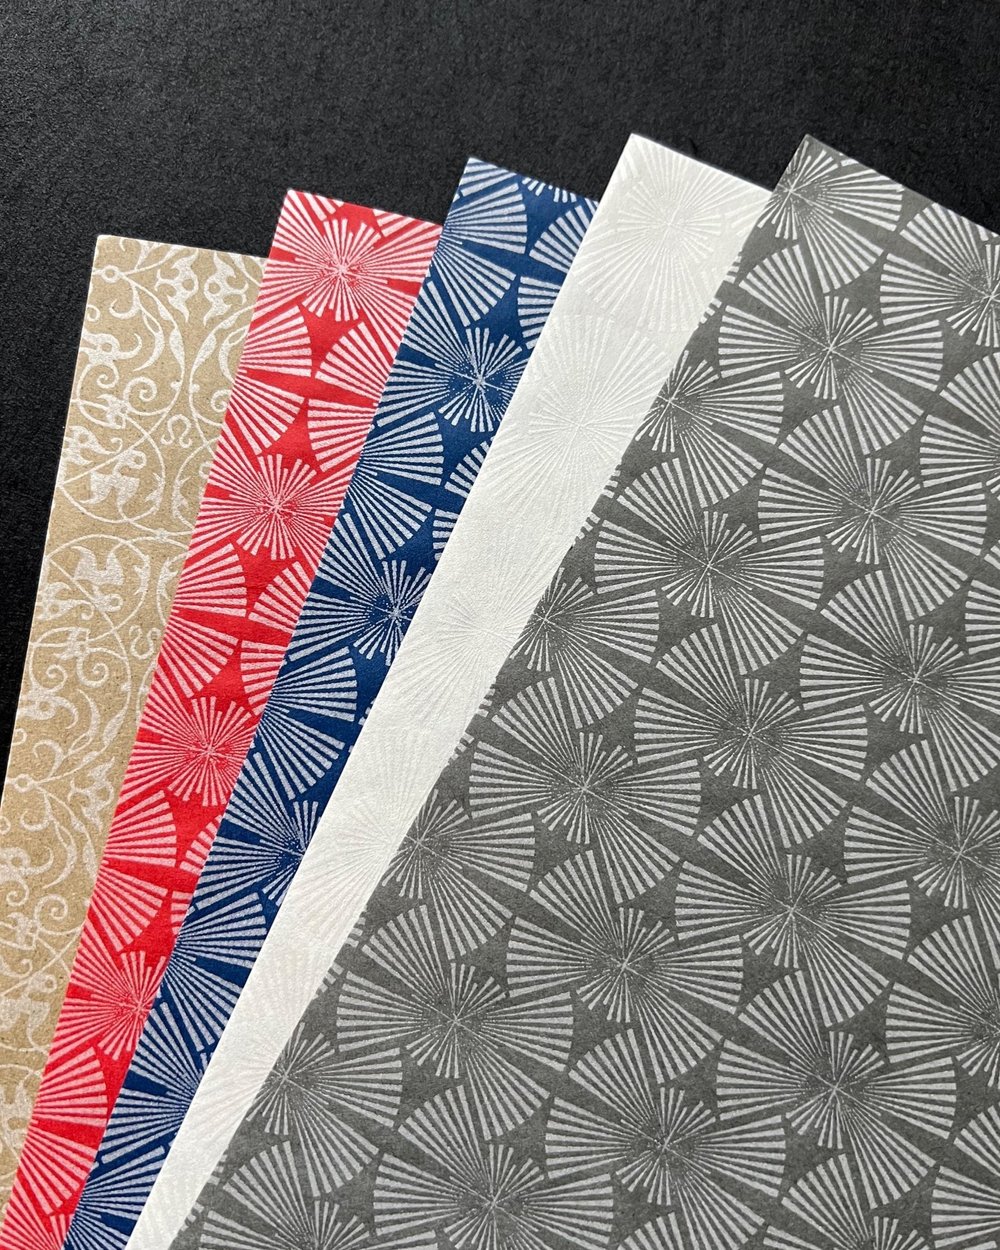 Light Blue Kyoseishi Crinkled Japanese Momigami Paper — Washi Arts